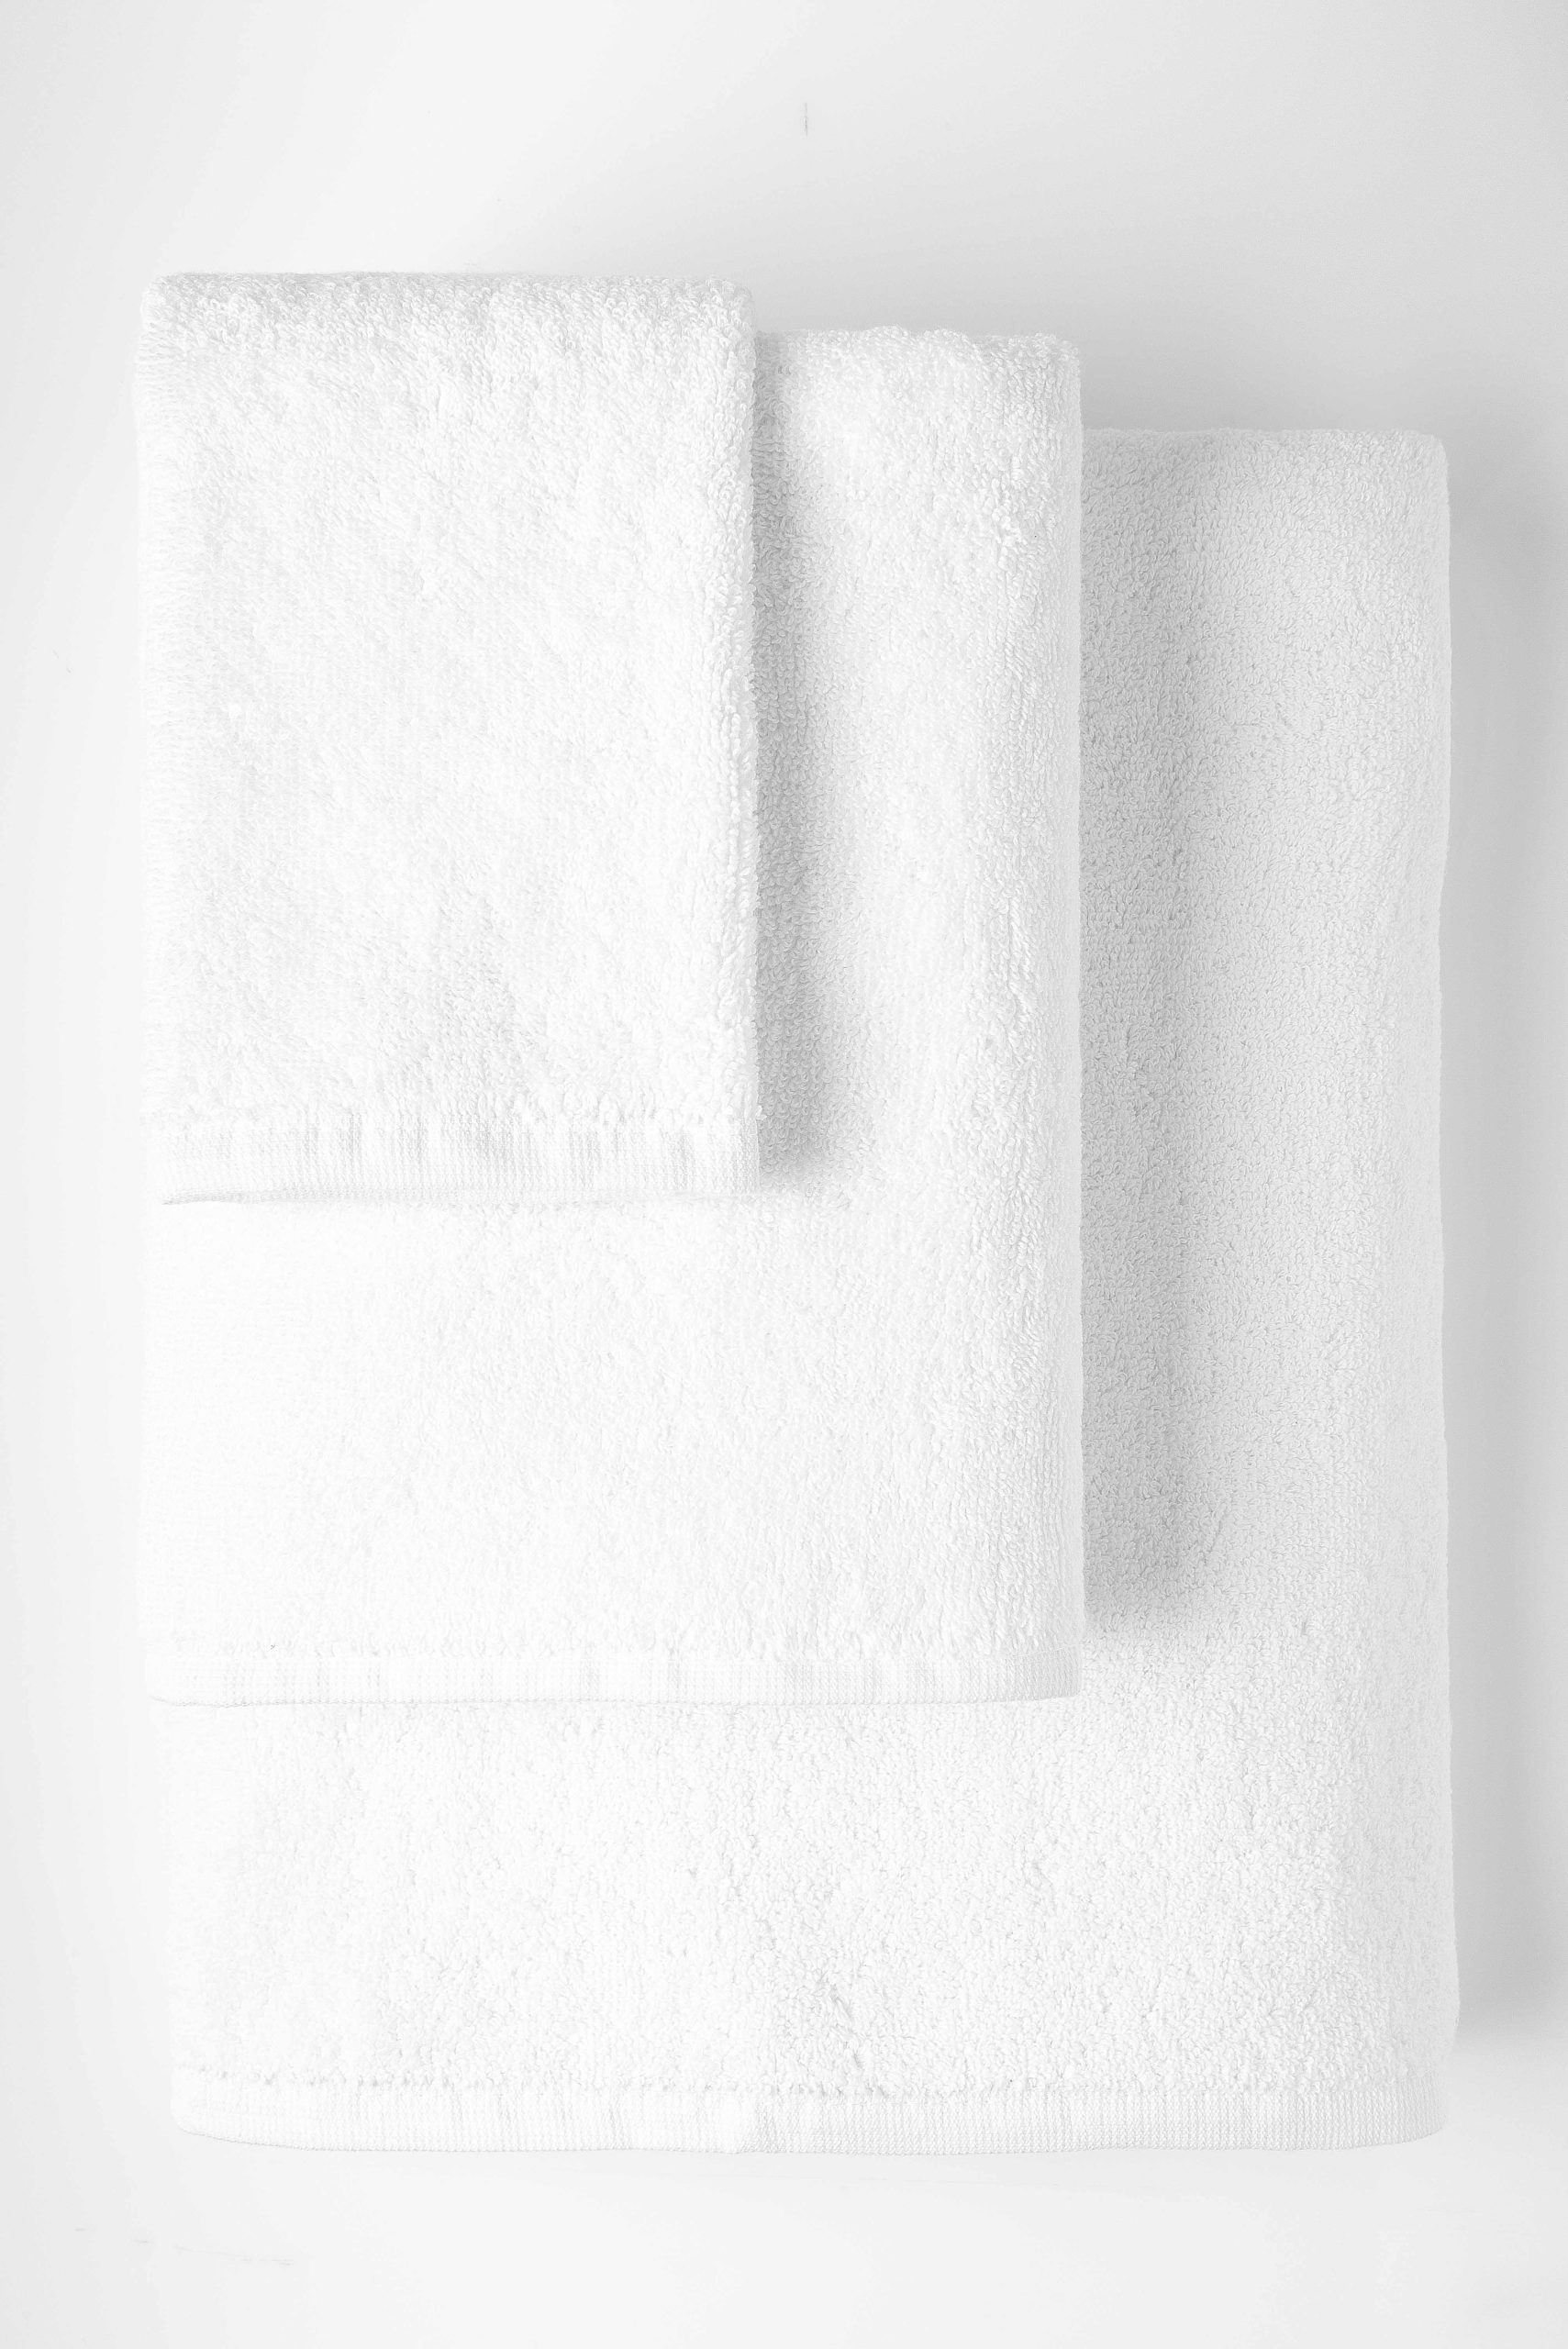 AD hotelska oprema Hotelski ručnik za tijelo plain 70x140 (2 komada) slika proizvoda